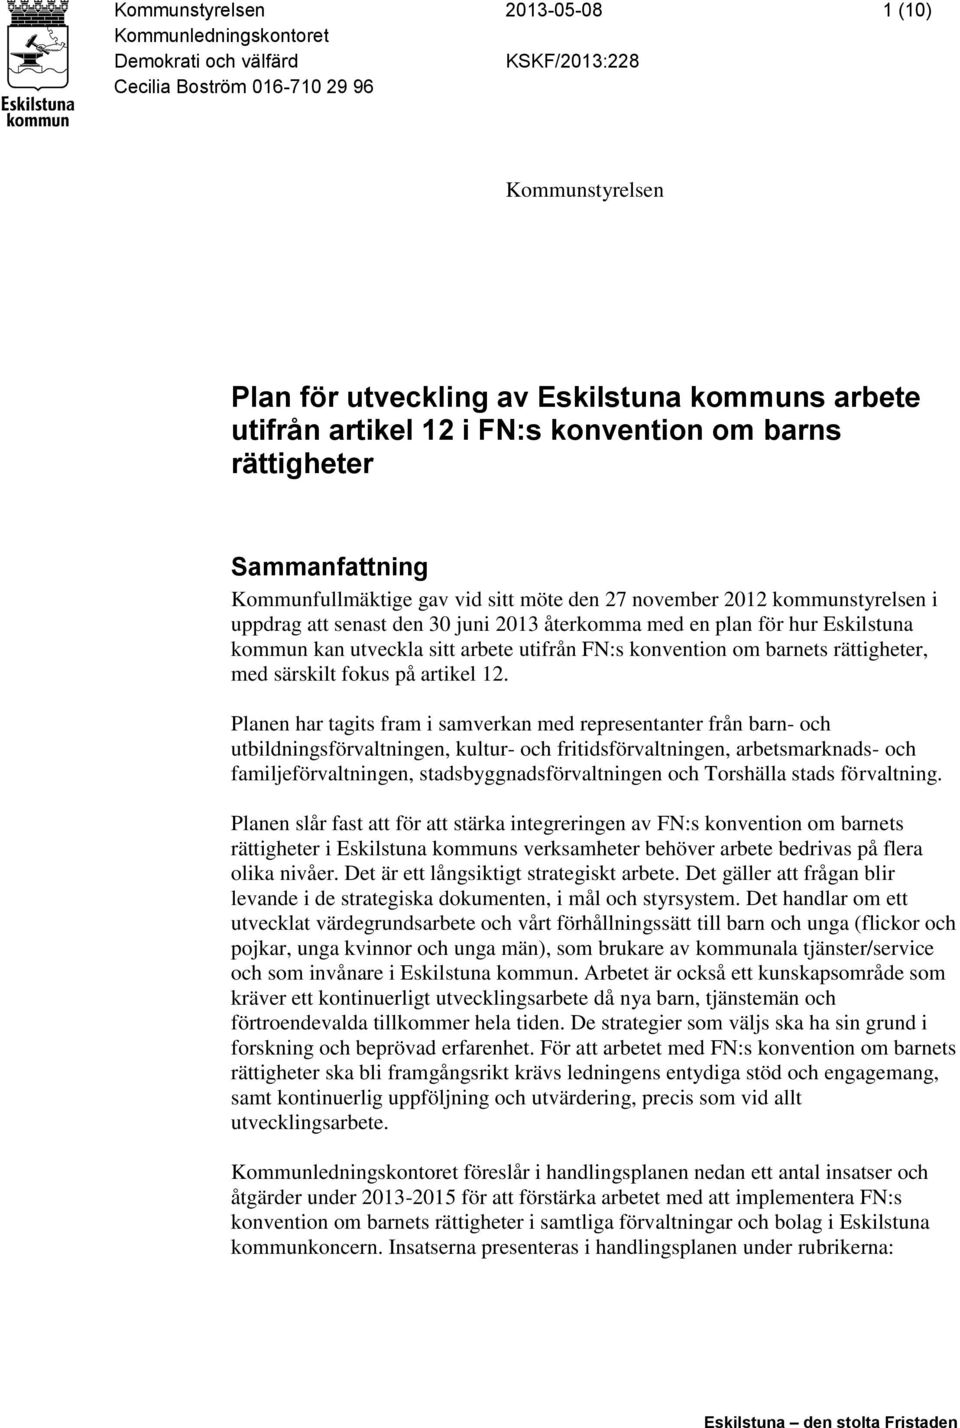 för hur Eskilstuna kommun kan utveckla sitt arbete utifrån FN:s konvention om barnets rättigheter, med särskilt fokus på artikel 12.